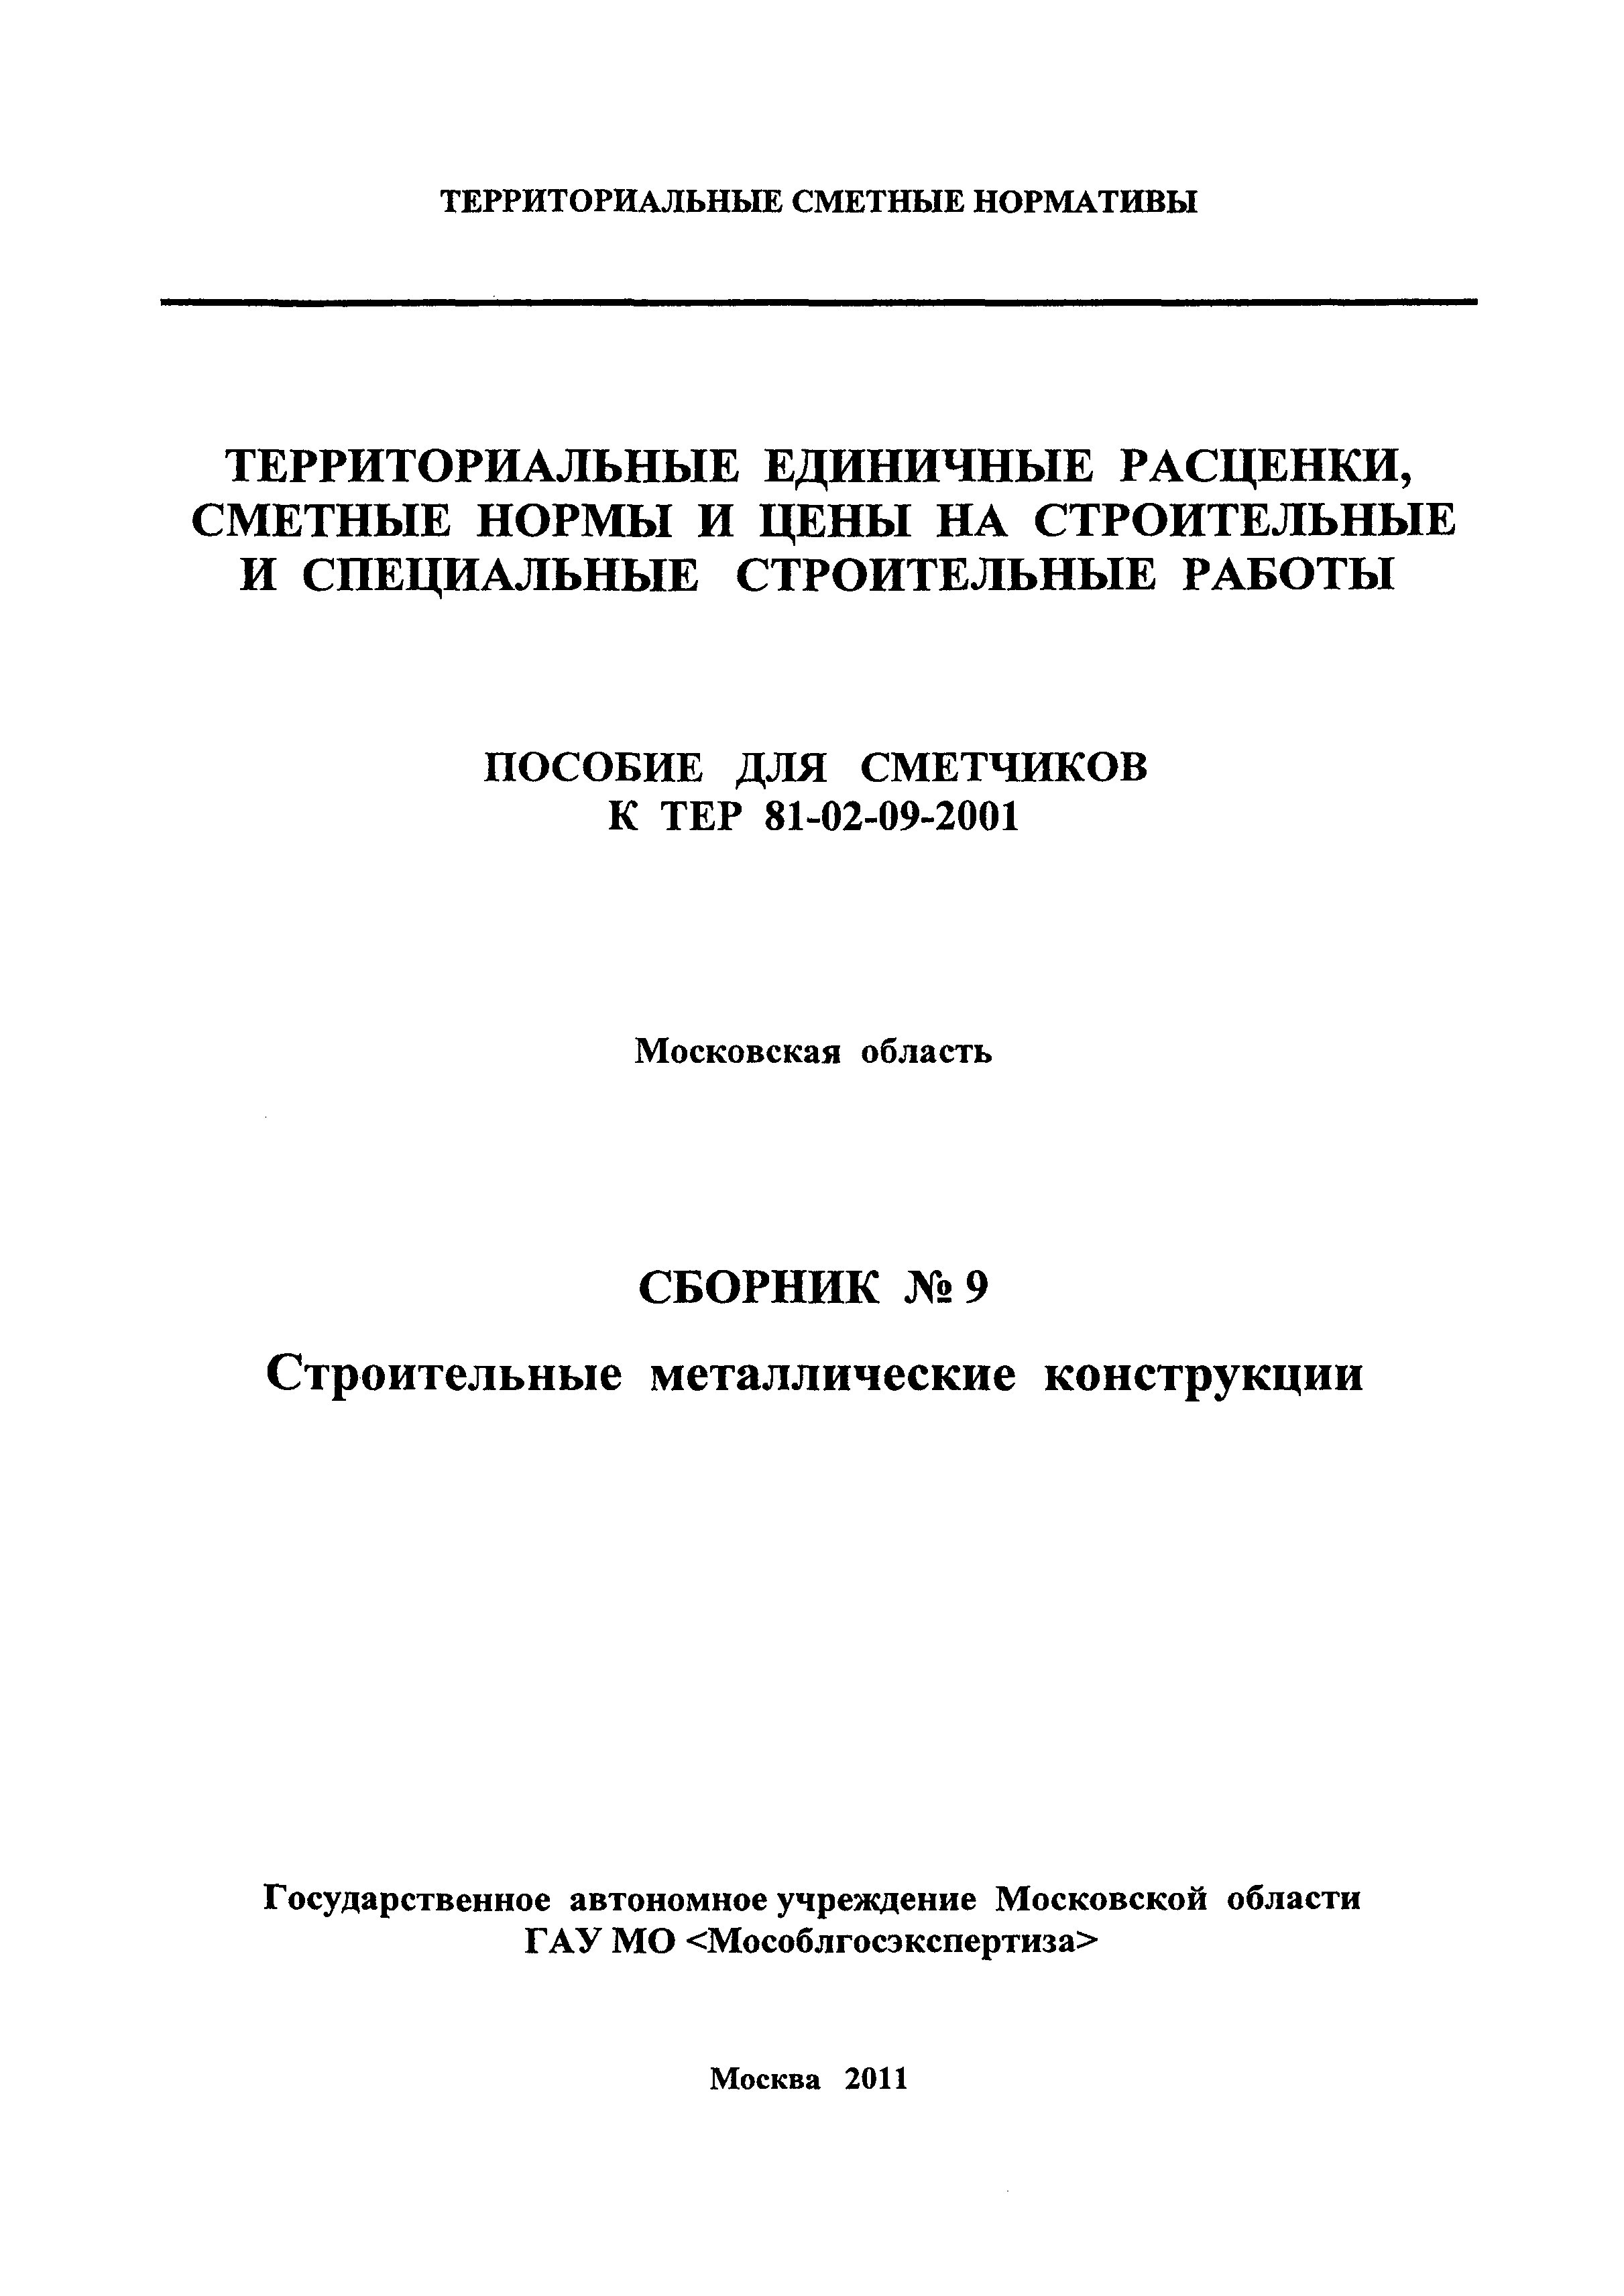 ГЭСНПиТЕР 2001-9 Московской области